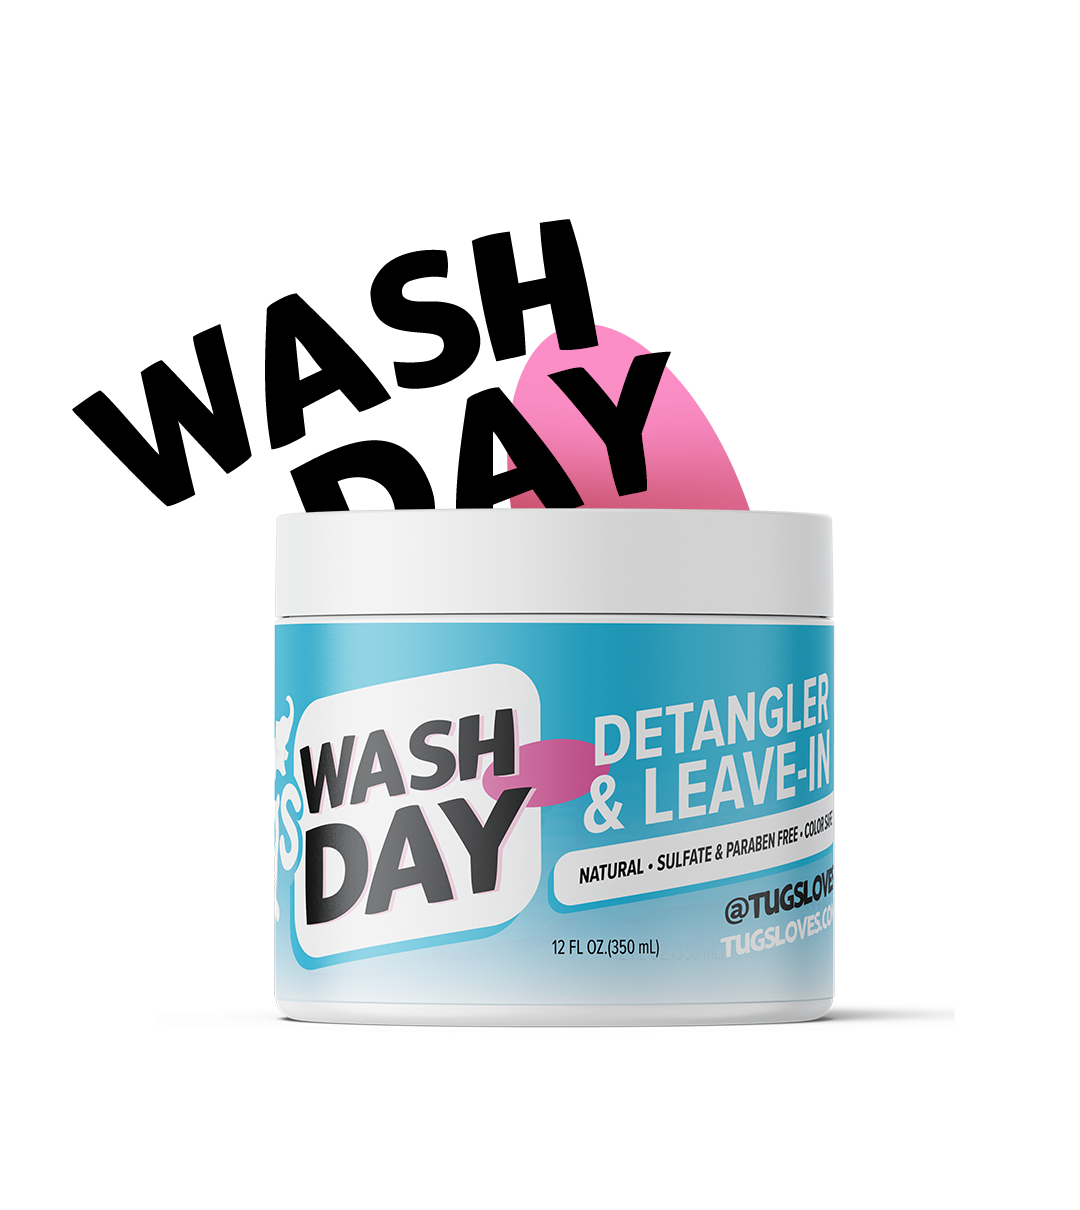 Wash Day Detangler & Leave-In